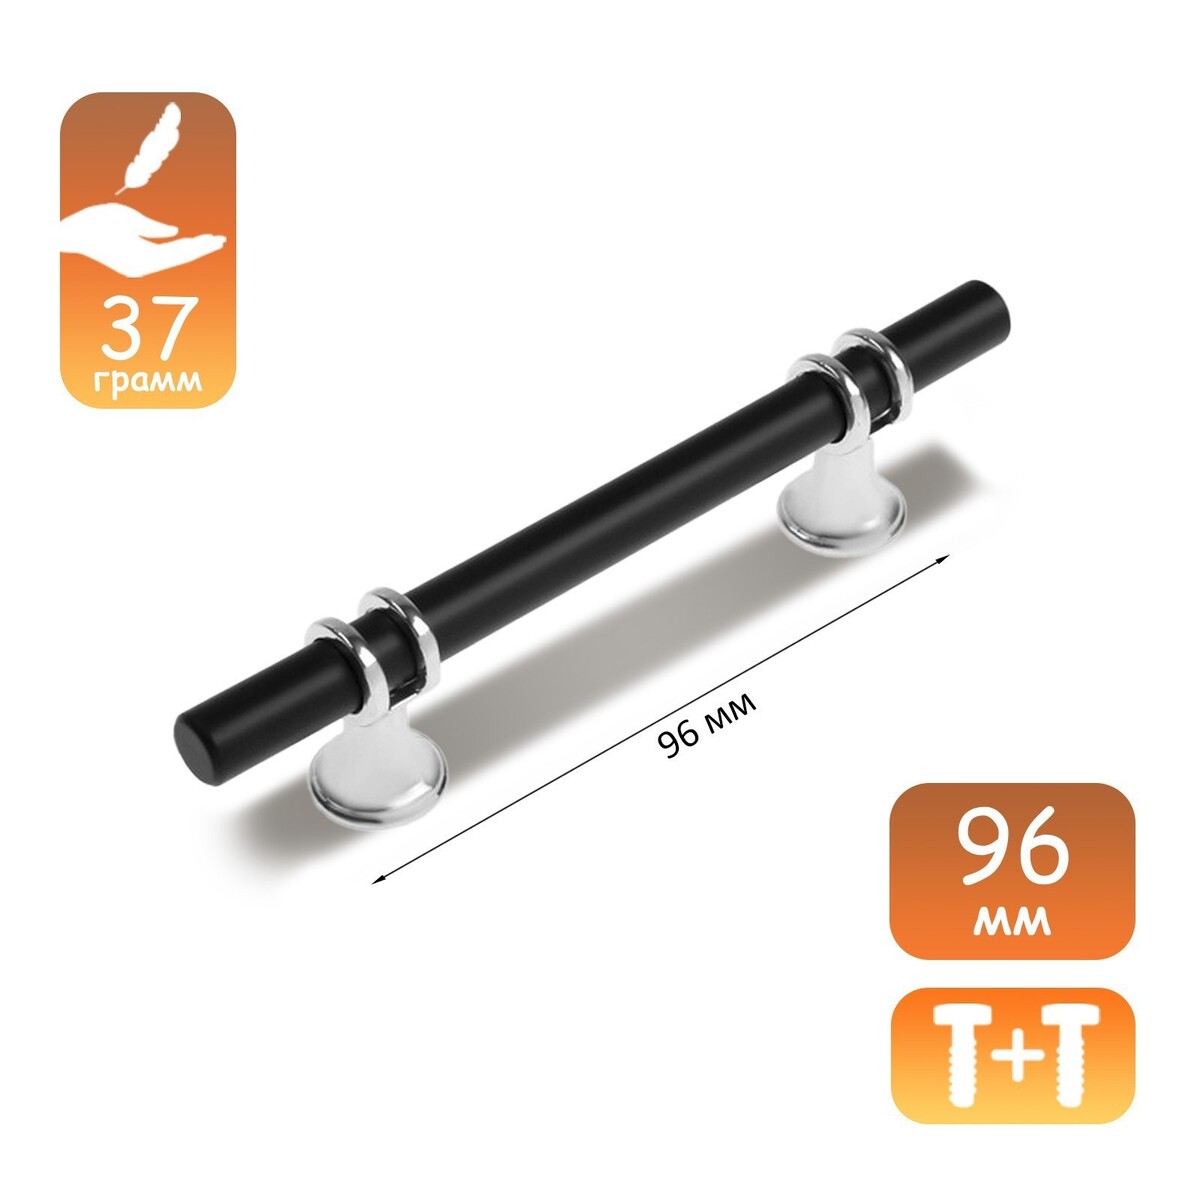 Ручка скоба cappio, м/о 96 мм, d=12 mm, пластик, цвет хром/черный ручка на планке trodos al106 85 l cp 204481 хром